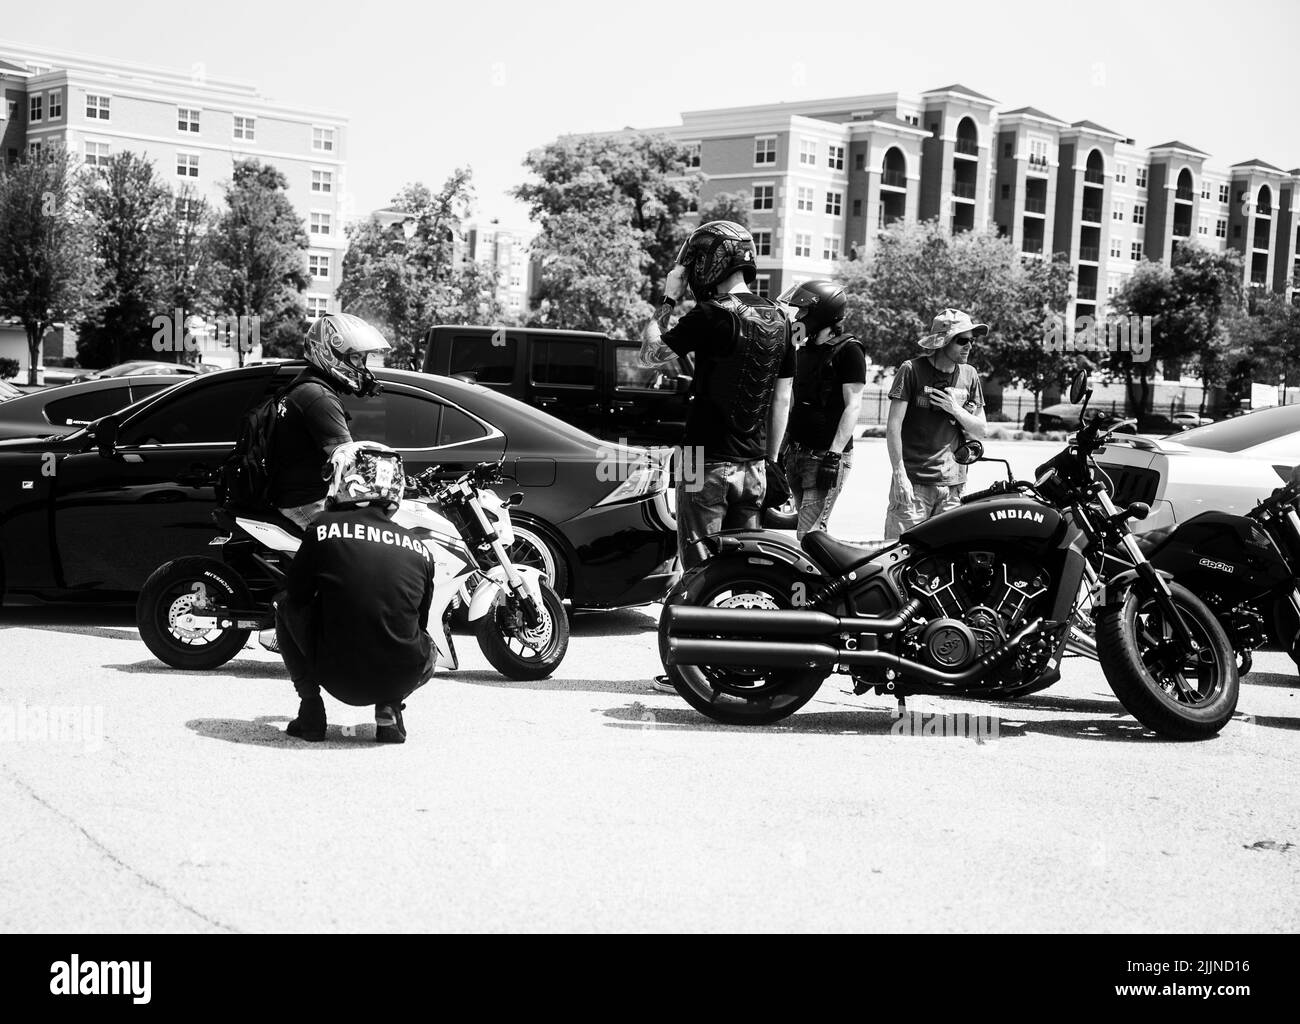 Une photo en échelle de gris de motos se rencontrant à Vernon Hills, aux États-Unis Banque D'Images